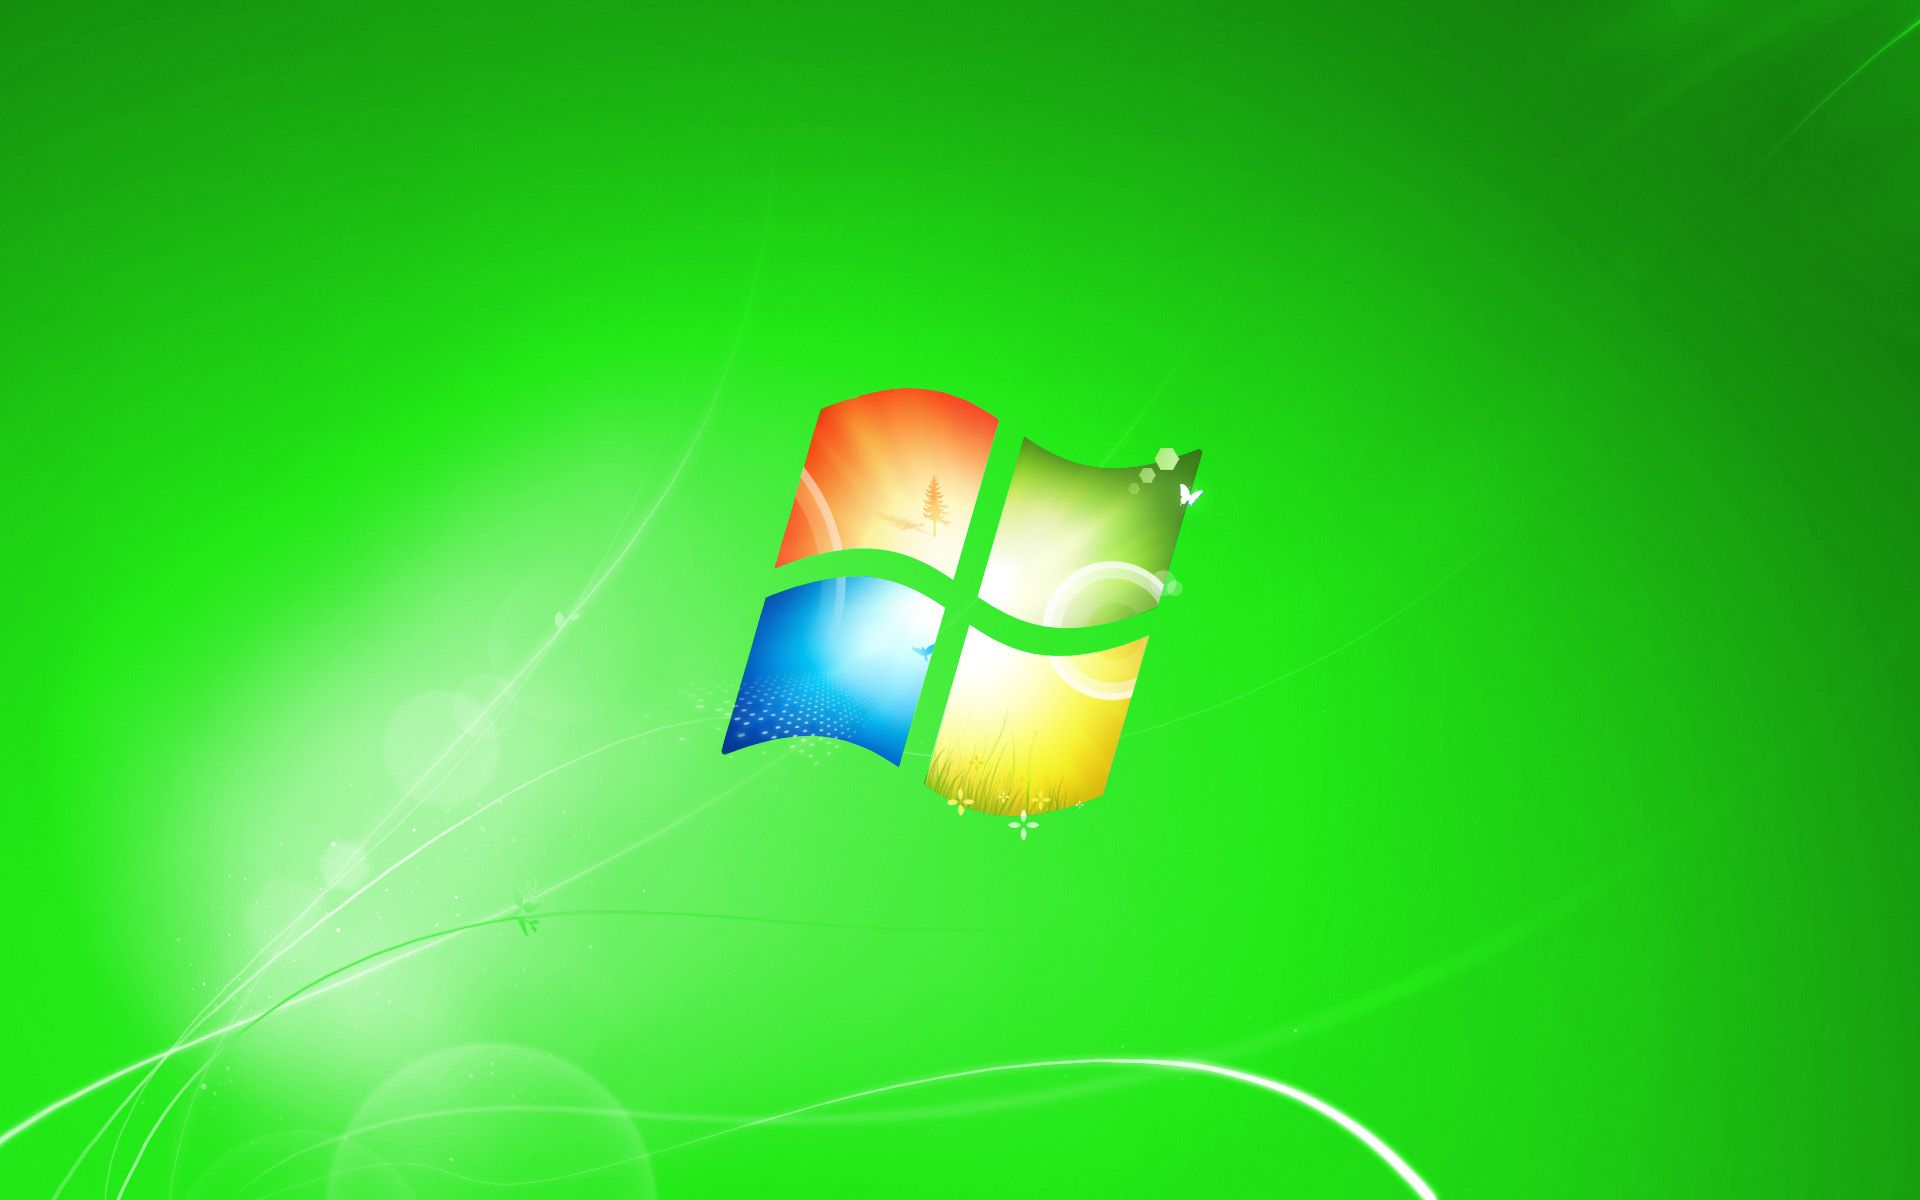 Hình nền mặc định Windows 7 - Wallpaper Cave là một bộ sưu tập các hình nền đẹp và đa dạng cho máy tính của bạn. Bạn sẽ luôn có nhiều lựa chọn để thay đổi hình nền trong quá trình sử dụng máy tính của mình.